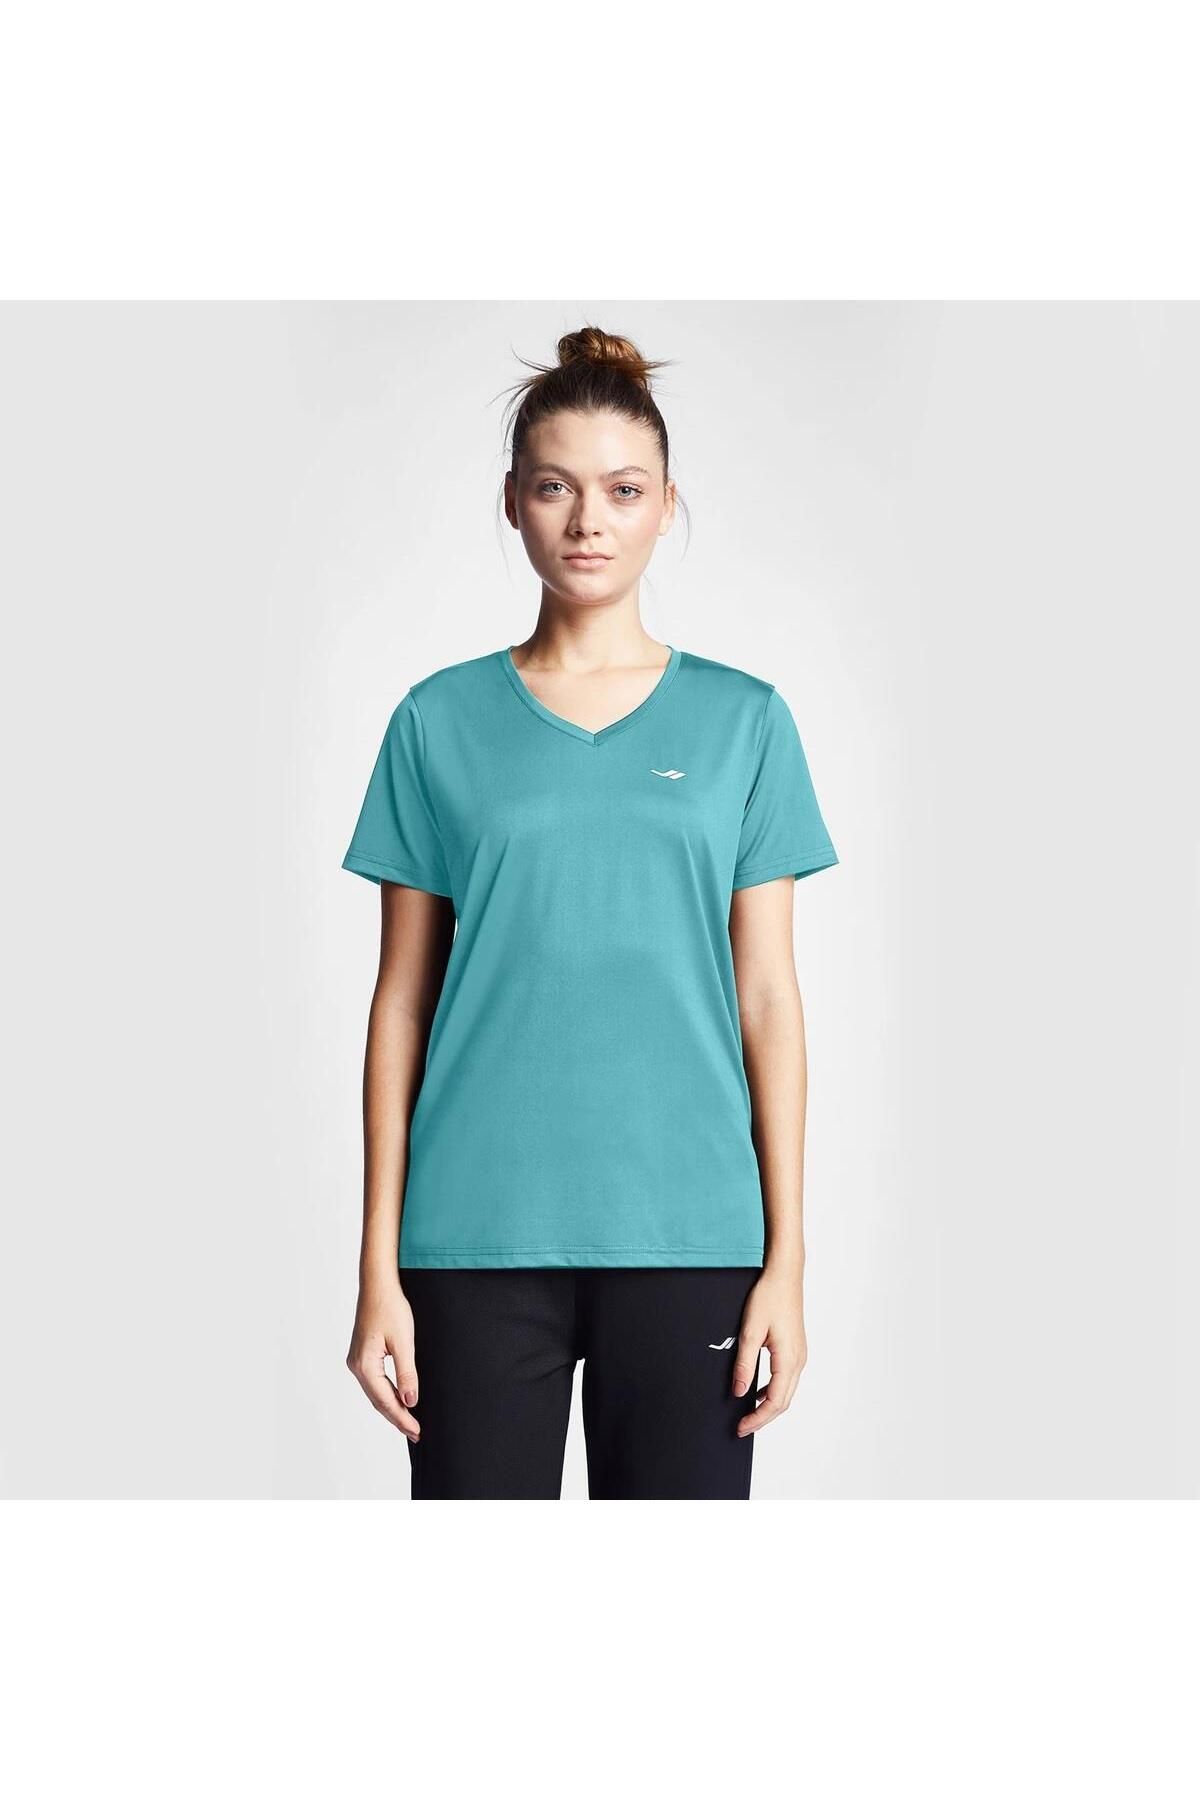 Lescon Kadın Kısa Kollu T-Shirt 24S-2208-24B 24BTBB002208